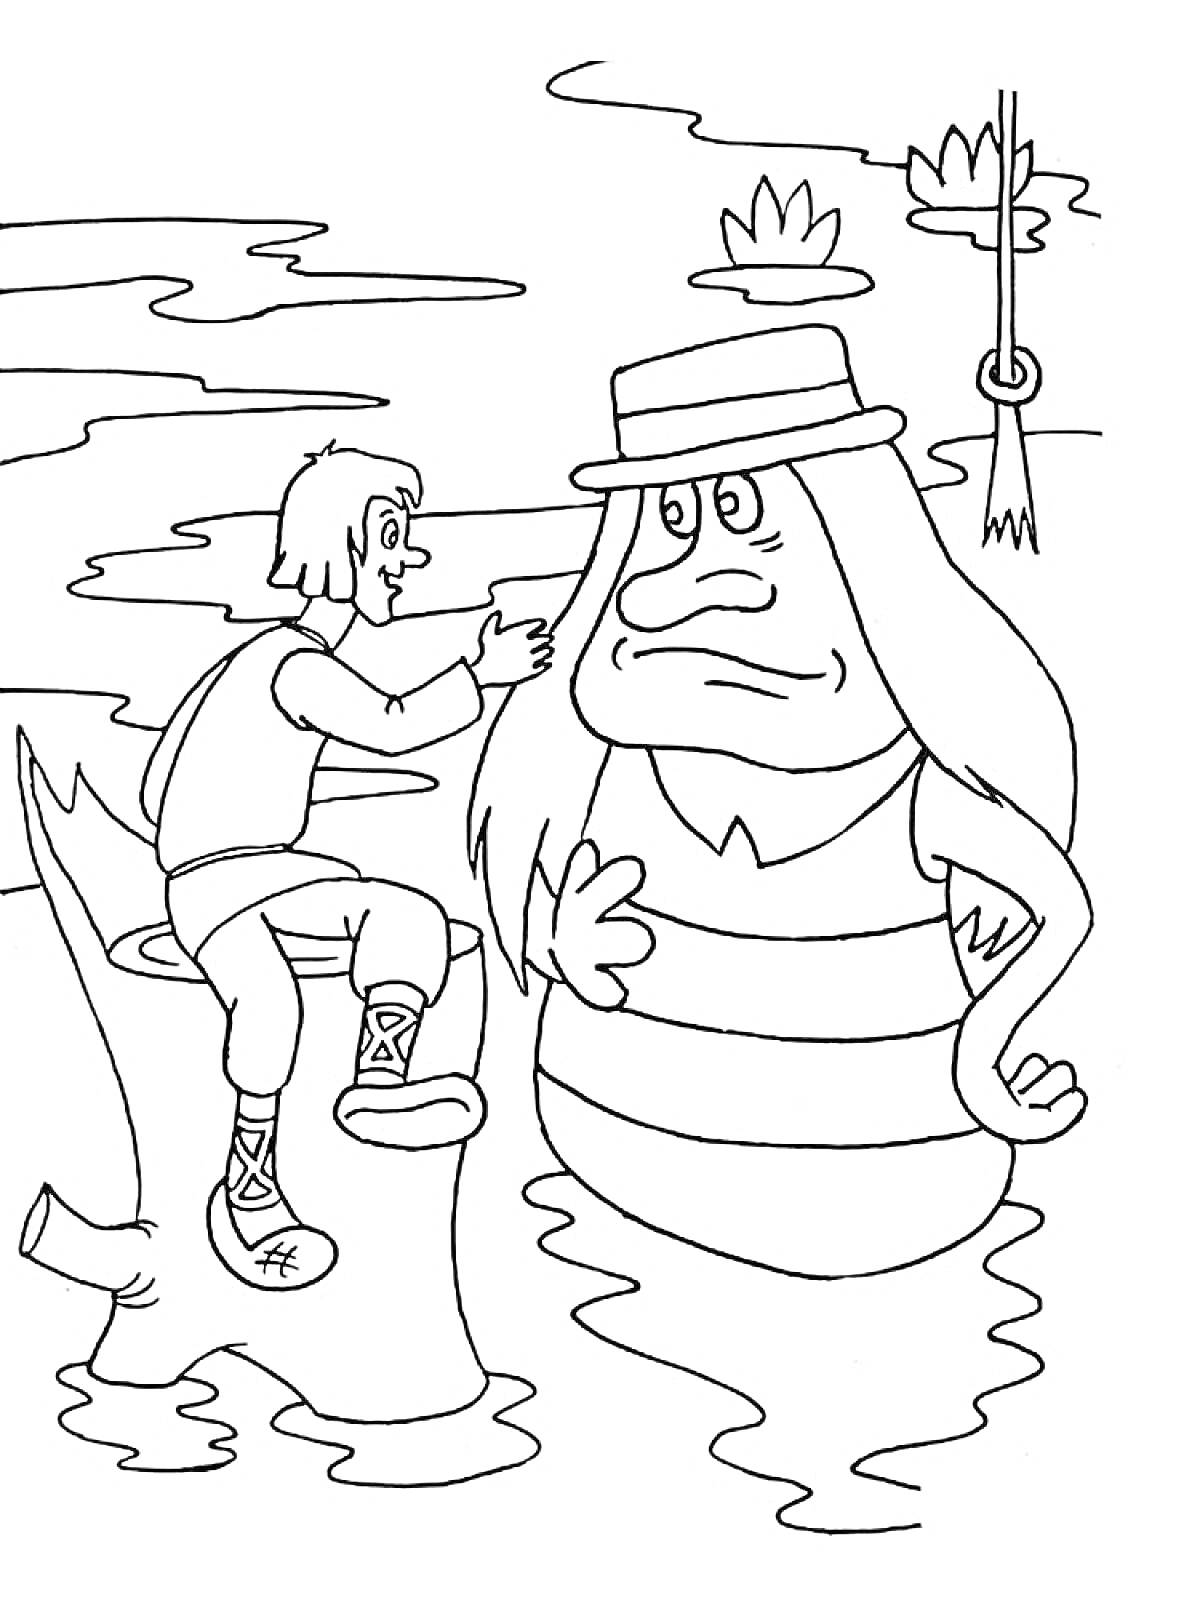 Раскраска Человек на бревне, расчесывающий водяного в шляпе